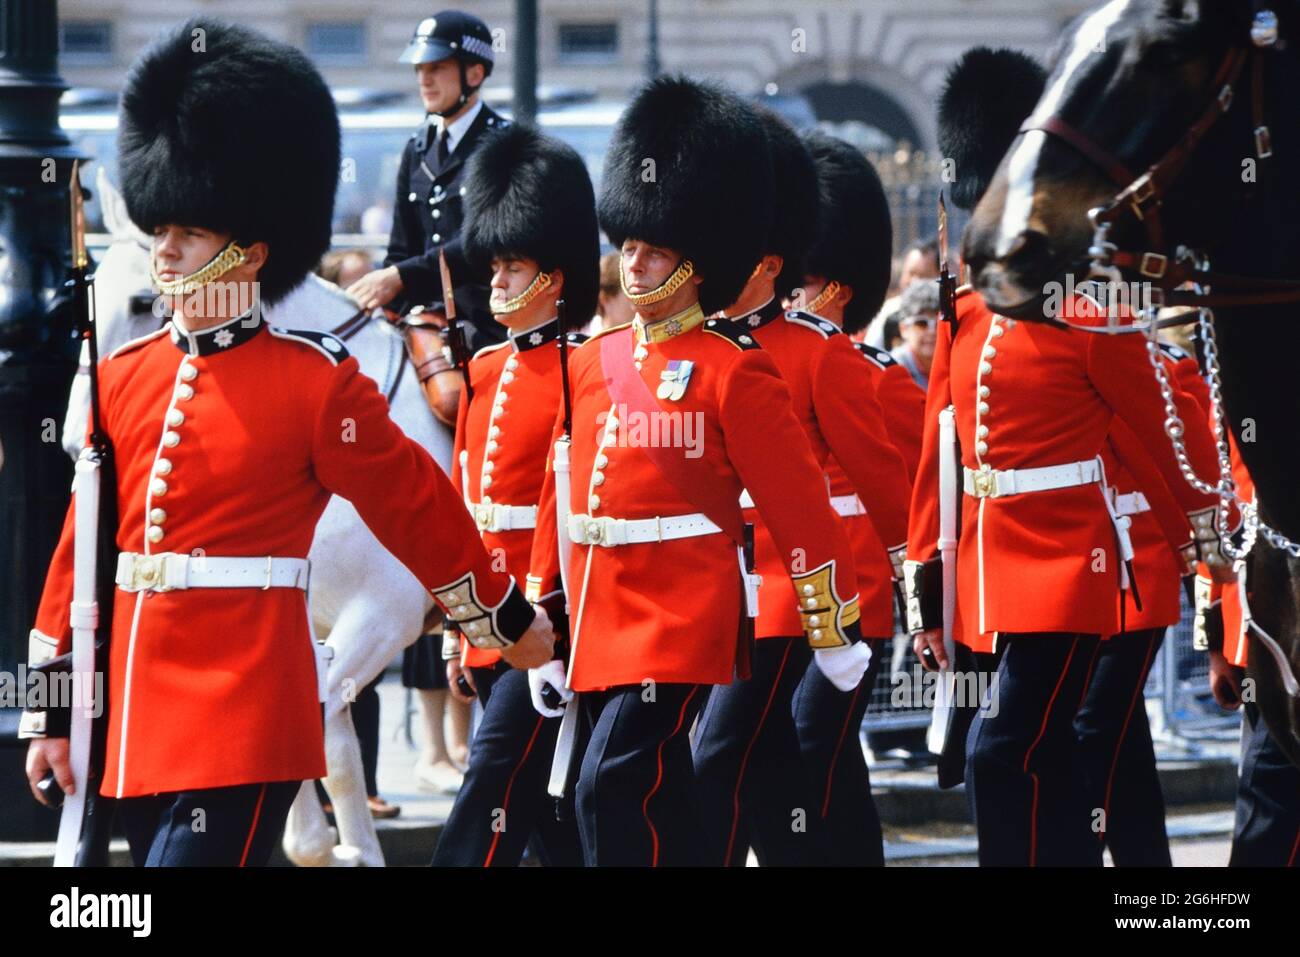 Marching Coldstream Guards, les soldats portant des chapeaux de barbes et des tuniques rouges au changement de la Garde. Buckingham Palace, Londres, Angleterre, Royaume-Uni. Vers les années 1980 Banque D'Images